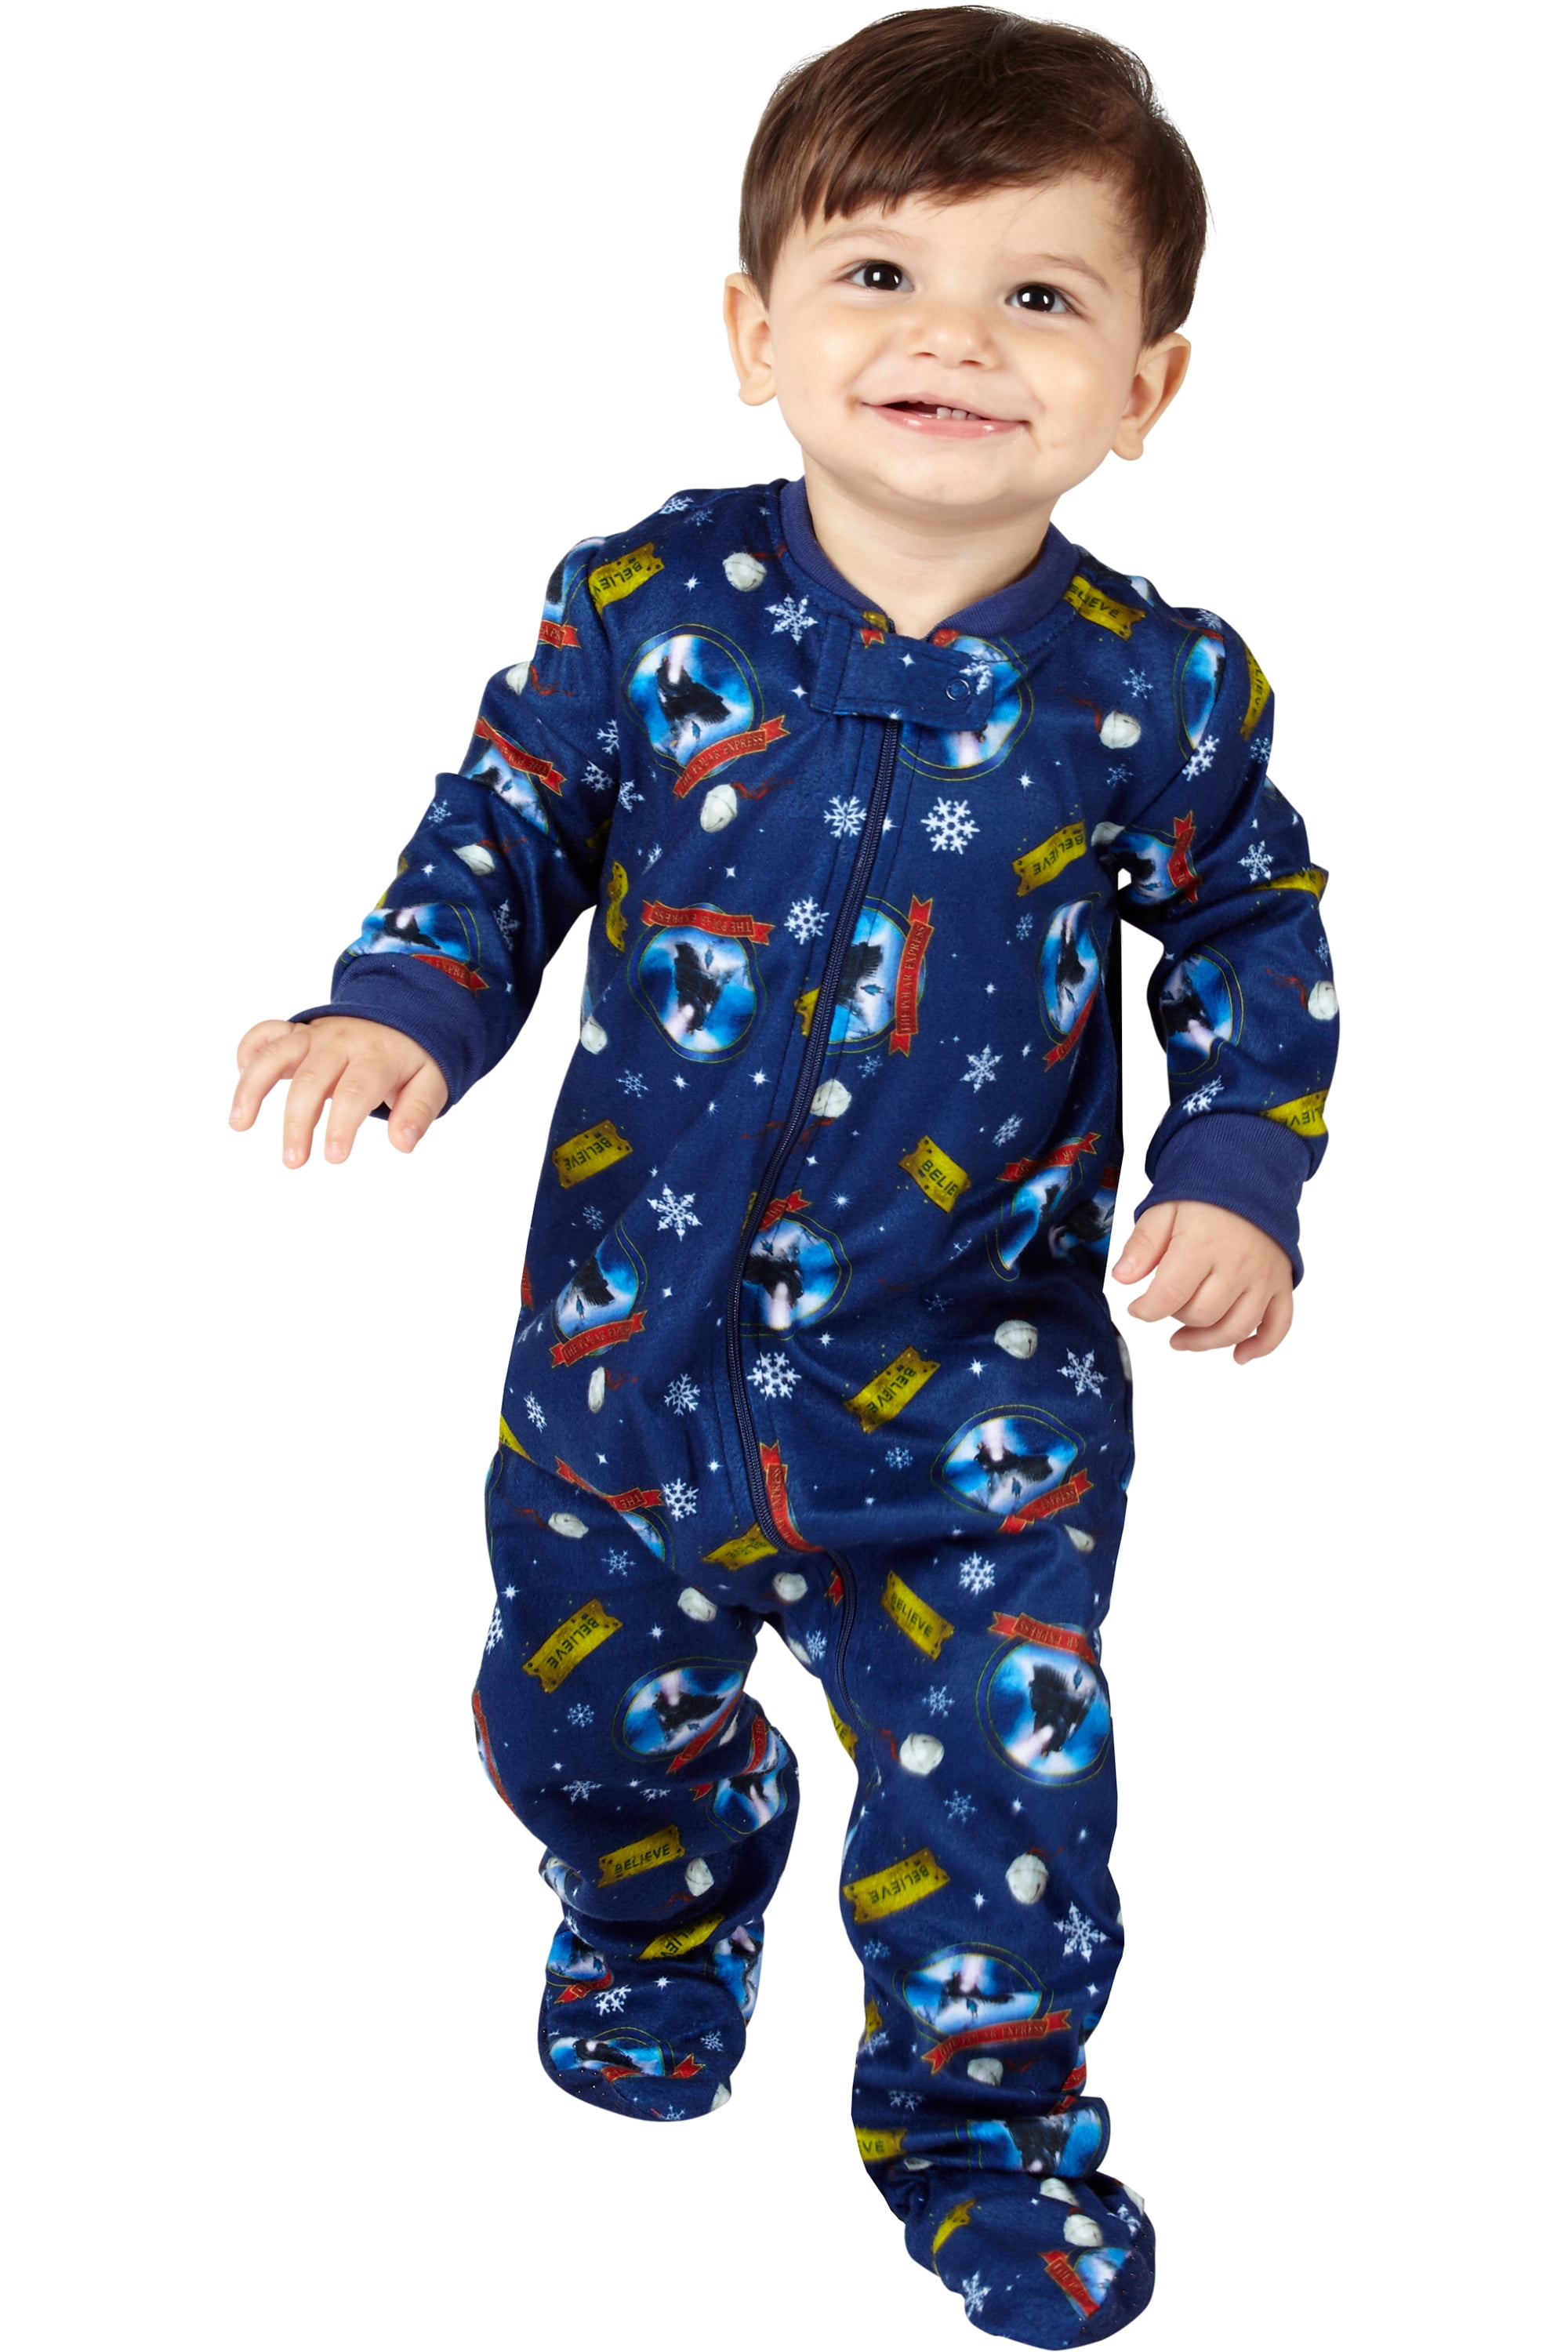 Polar Express Kids Believe One Piece Pajama Sleeper, Blue, 12M 